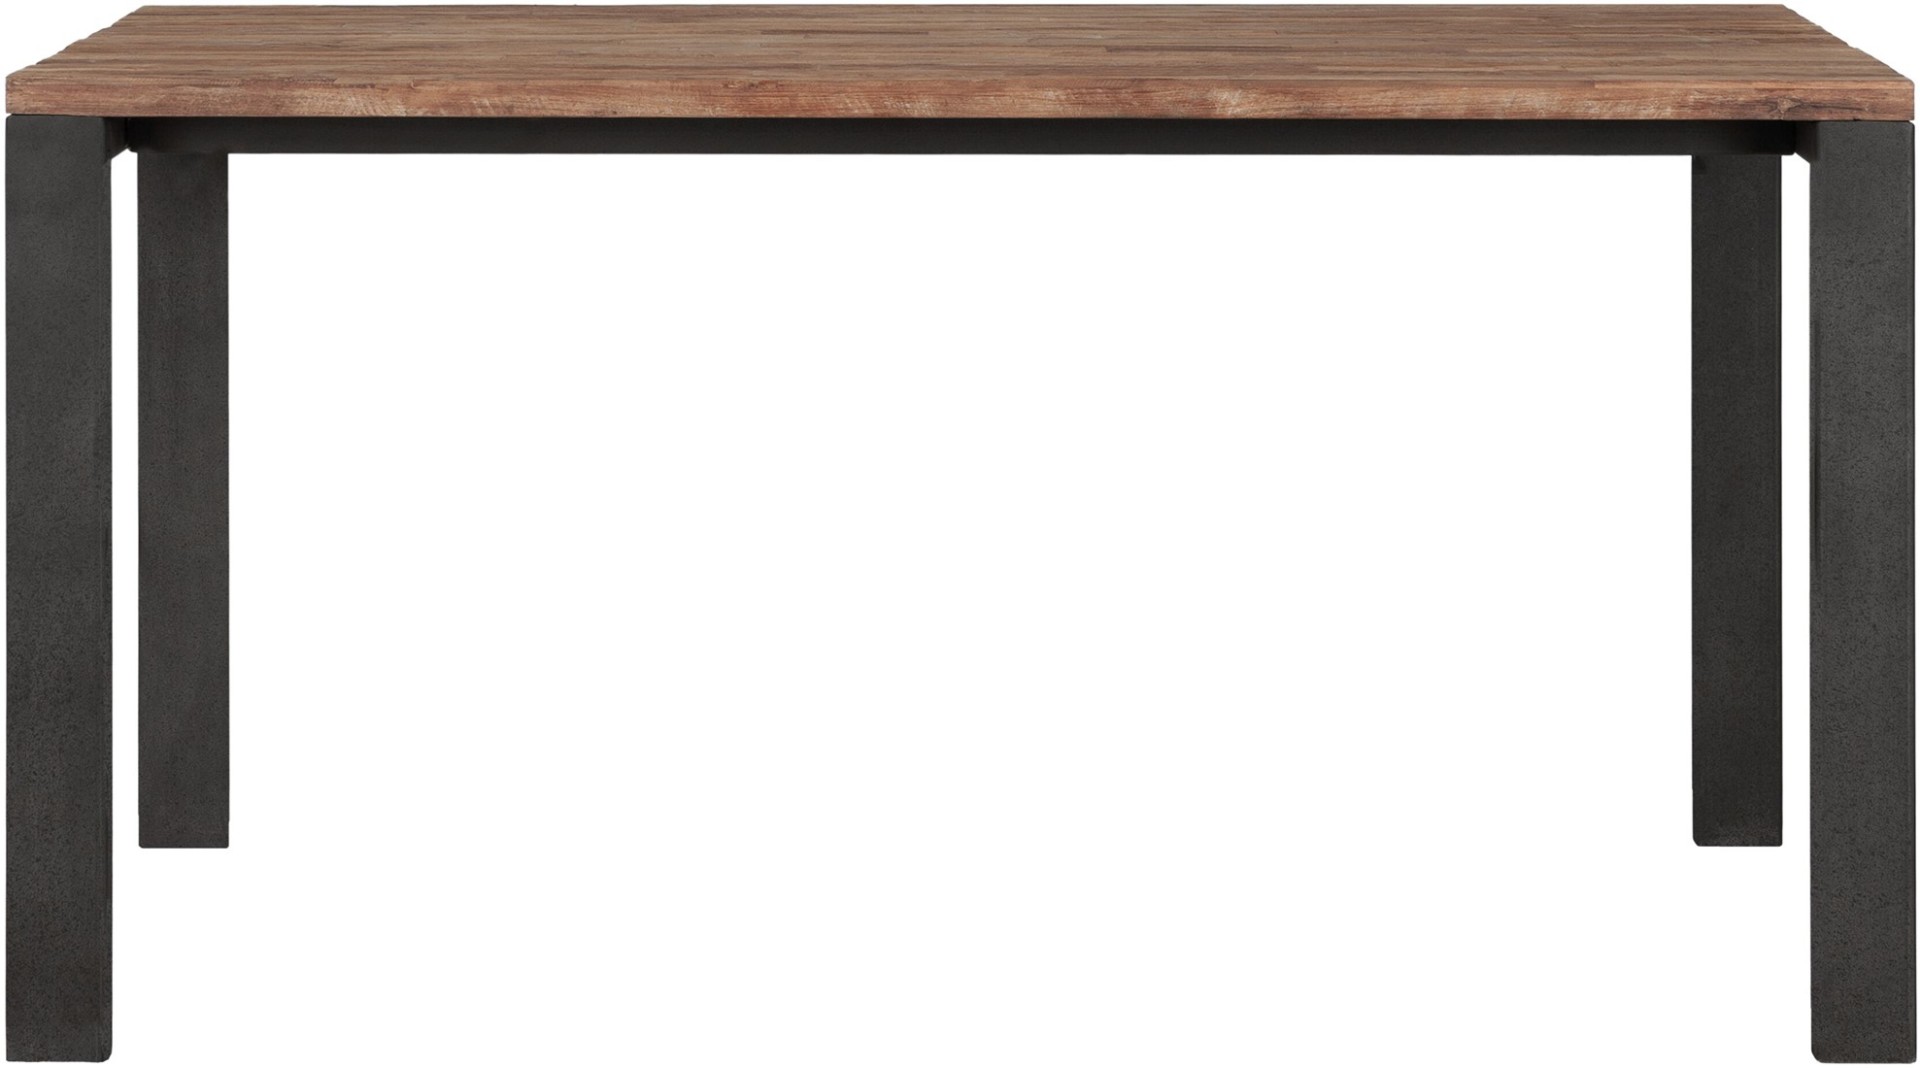 Der Esstisch Track überzeugt mit seinem modern und schlichtem Design. Gefertigt wurde der Tisch aus recyceltem Teakholz, welches einen natürlichen Farbton besitzt. Das Gestell ist aus Metall und ist Schwarz. Der Tisch hat eine Länge von 150 cm und eine Pl